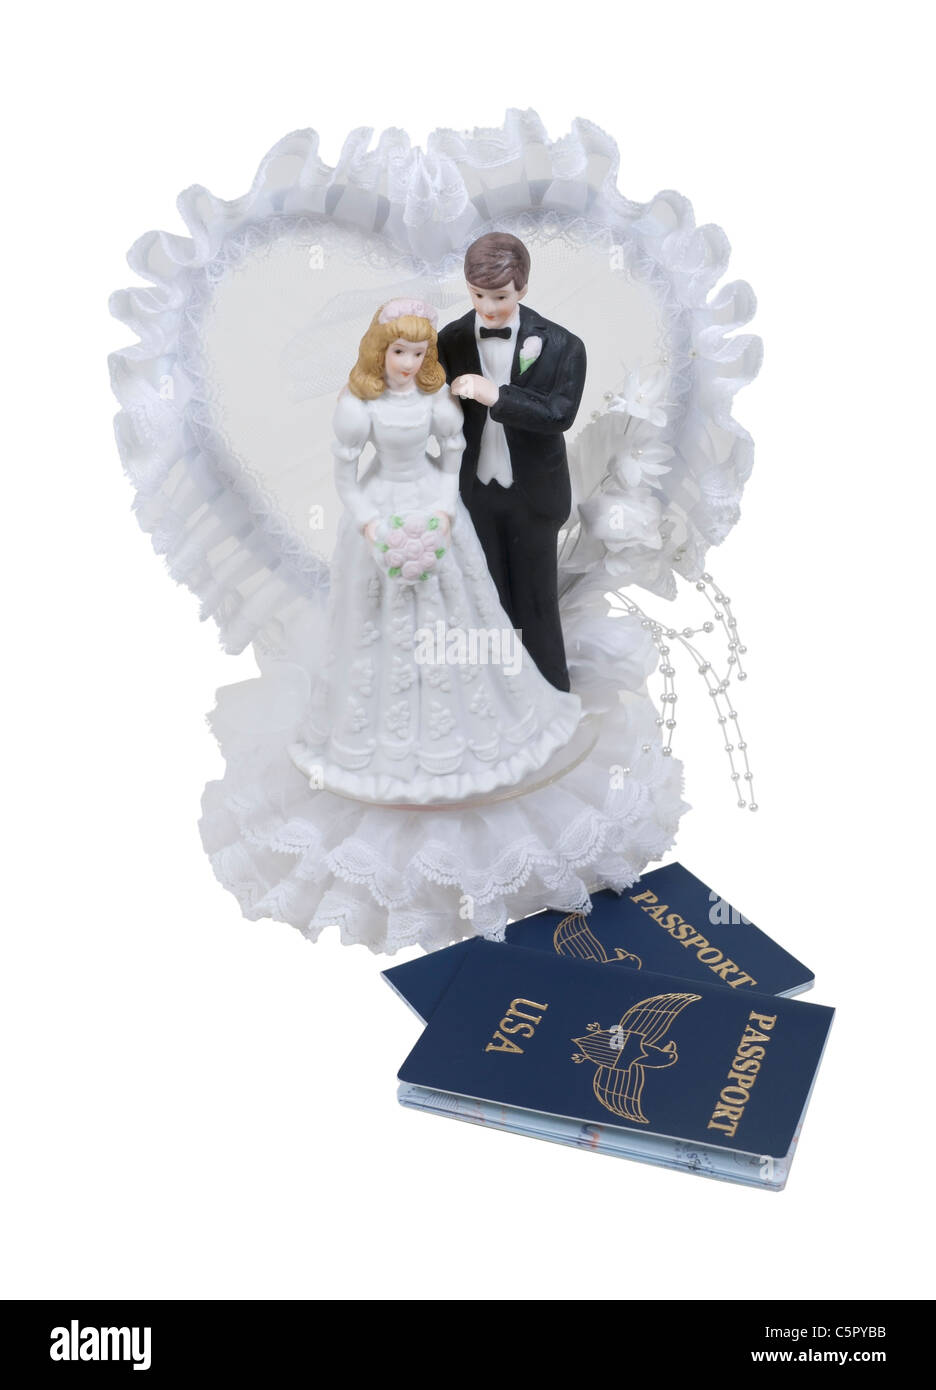 Hochzeitsreisende, dargestellt durch eine Braut und Bräutigam Cake Topper und Pässe für die Reise - Pfad enthalten Stockfoto